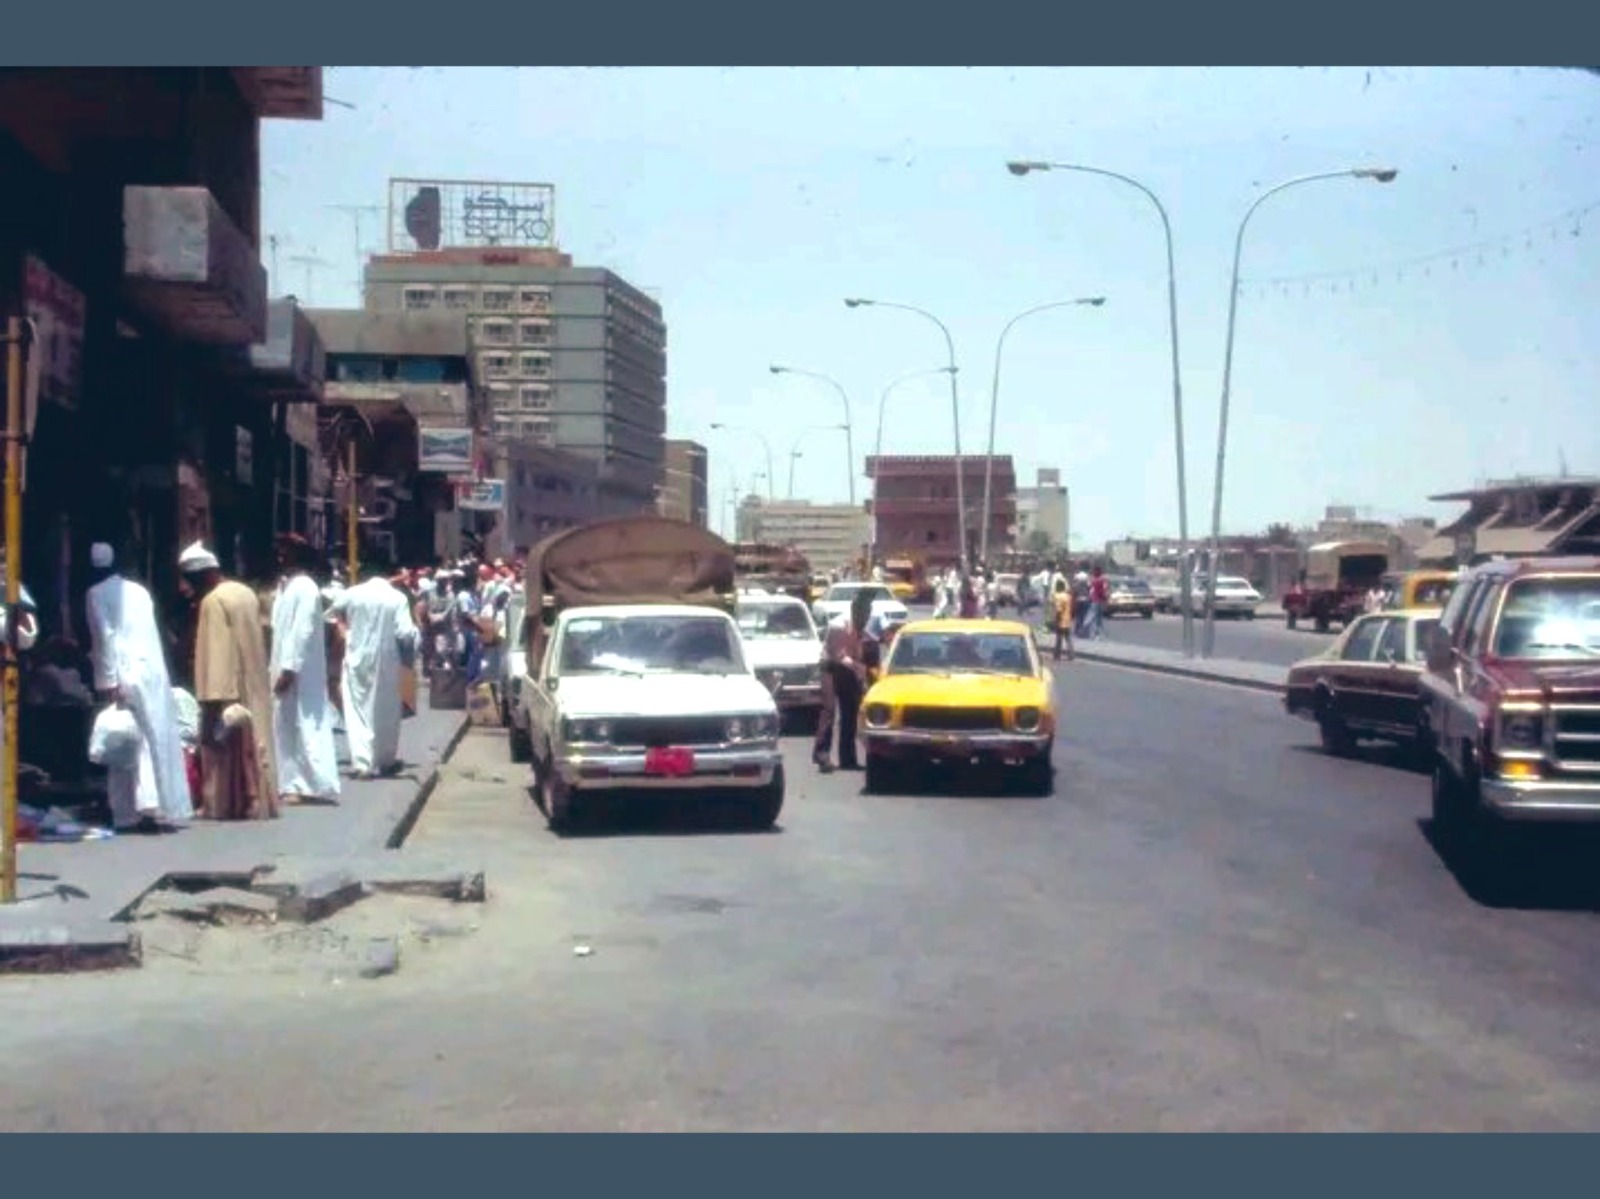 شارع الملك سعود بالثمانينات الميلادية بالدمام